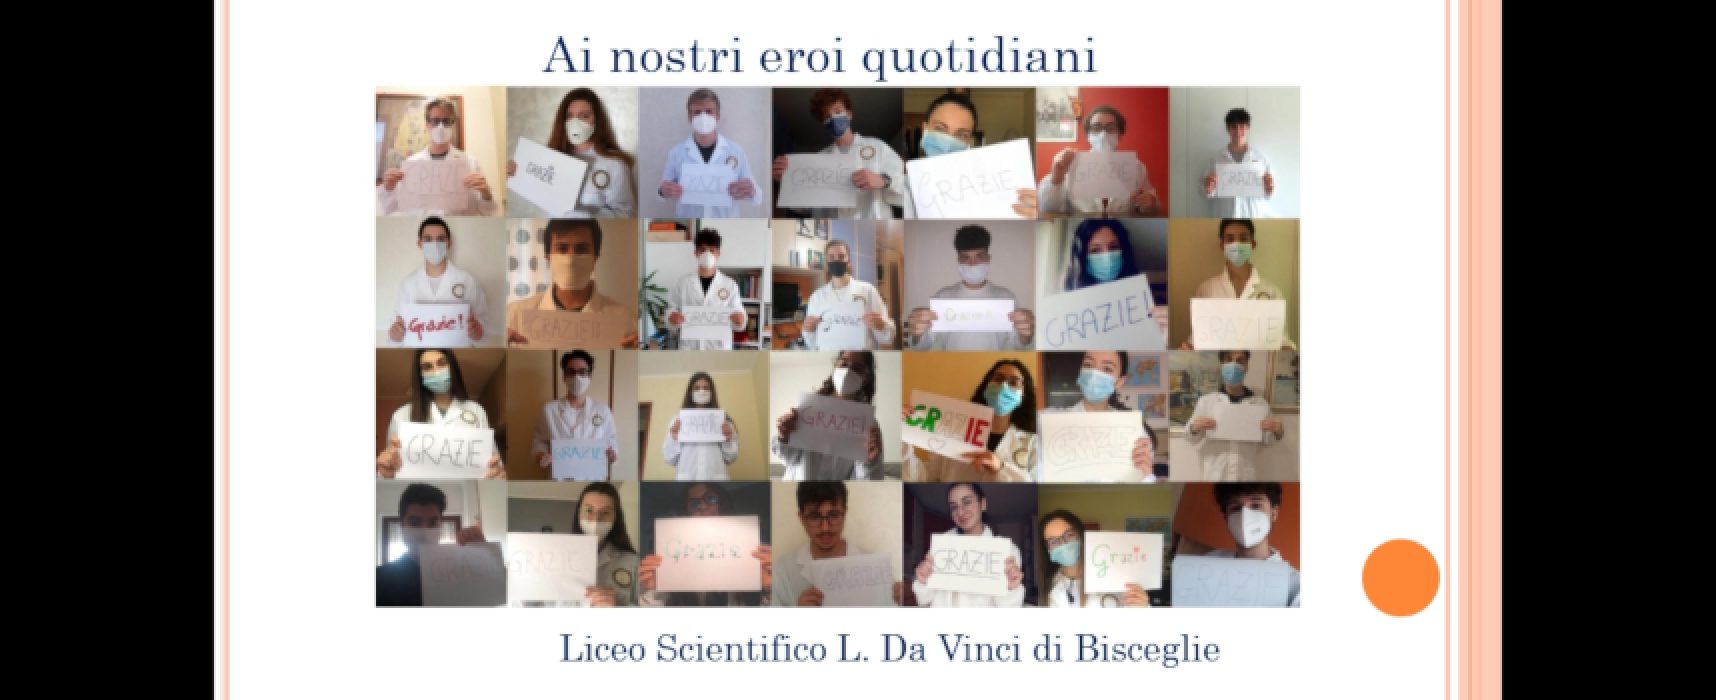 Liceo “da Vinci” in videoconferenza con il personale del Covid Hospital di Bisceglie / FOTO